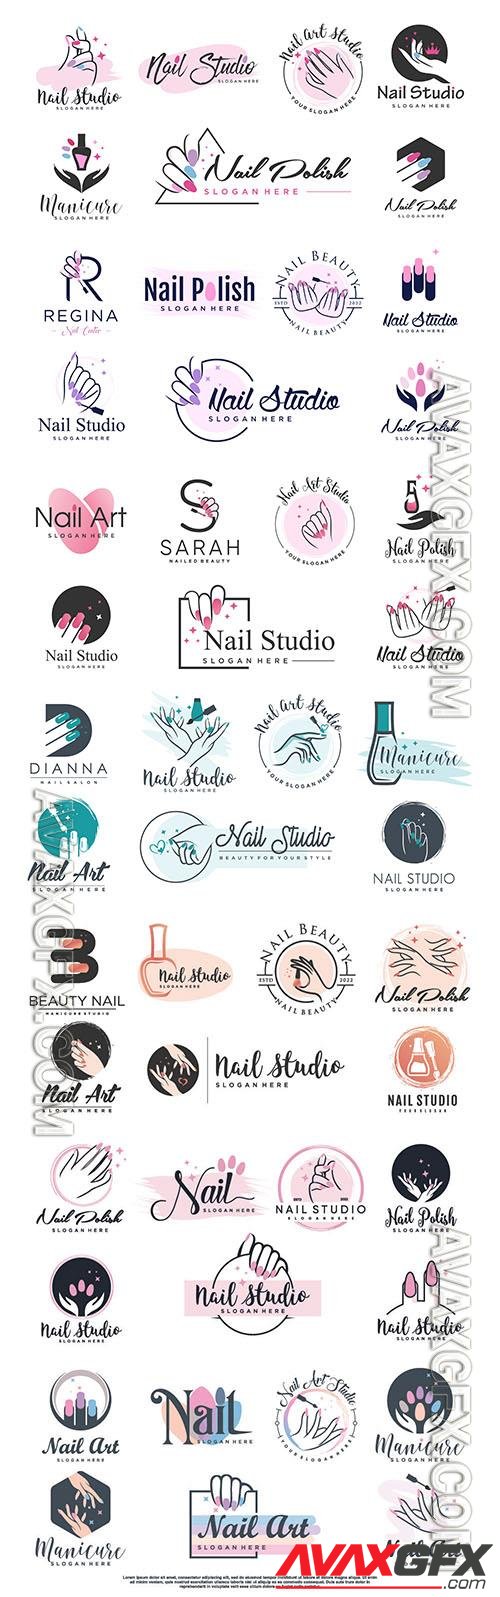 Vector nail salon icon logo design with creative unique style